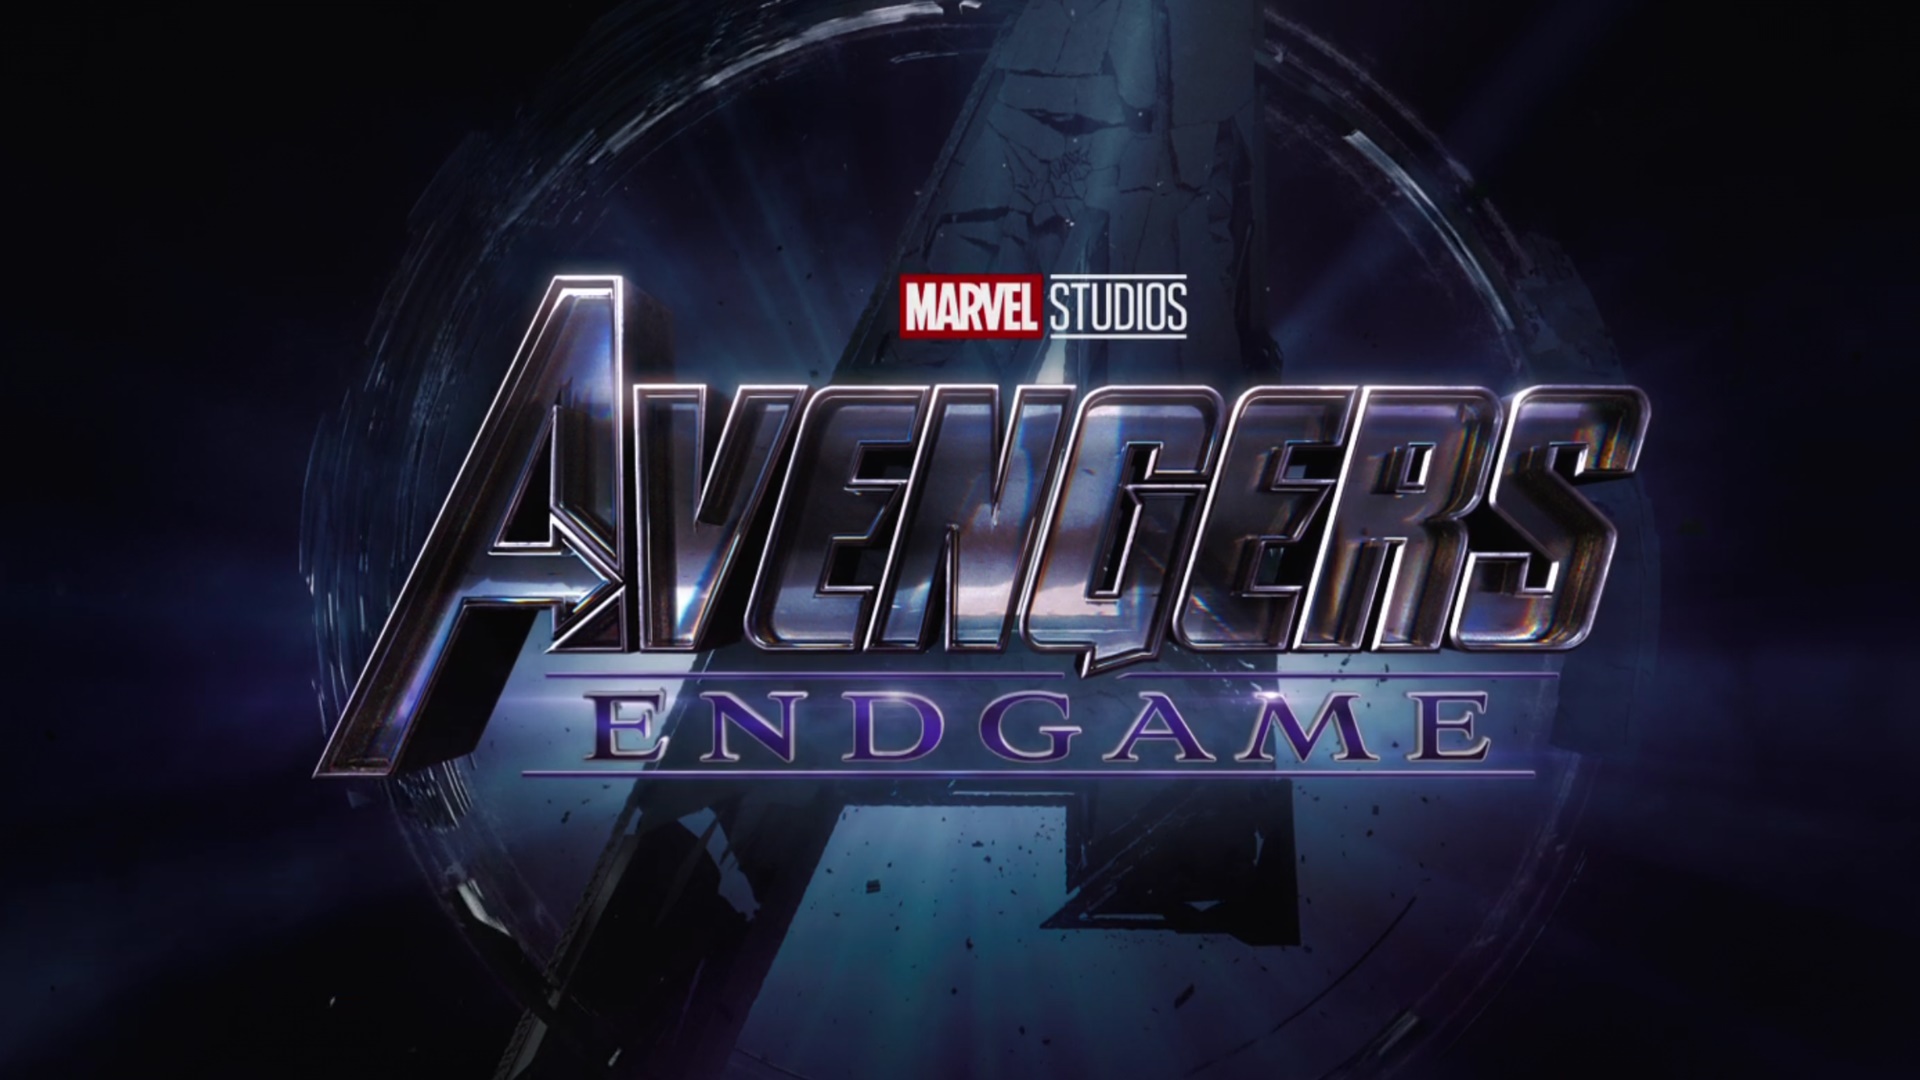 Avengers: Endgame // Fragman İncelemesi ve Teoriler